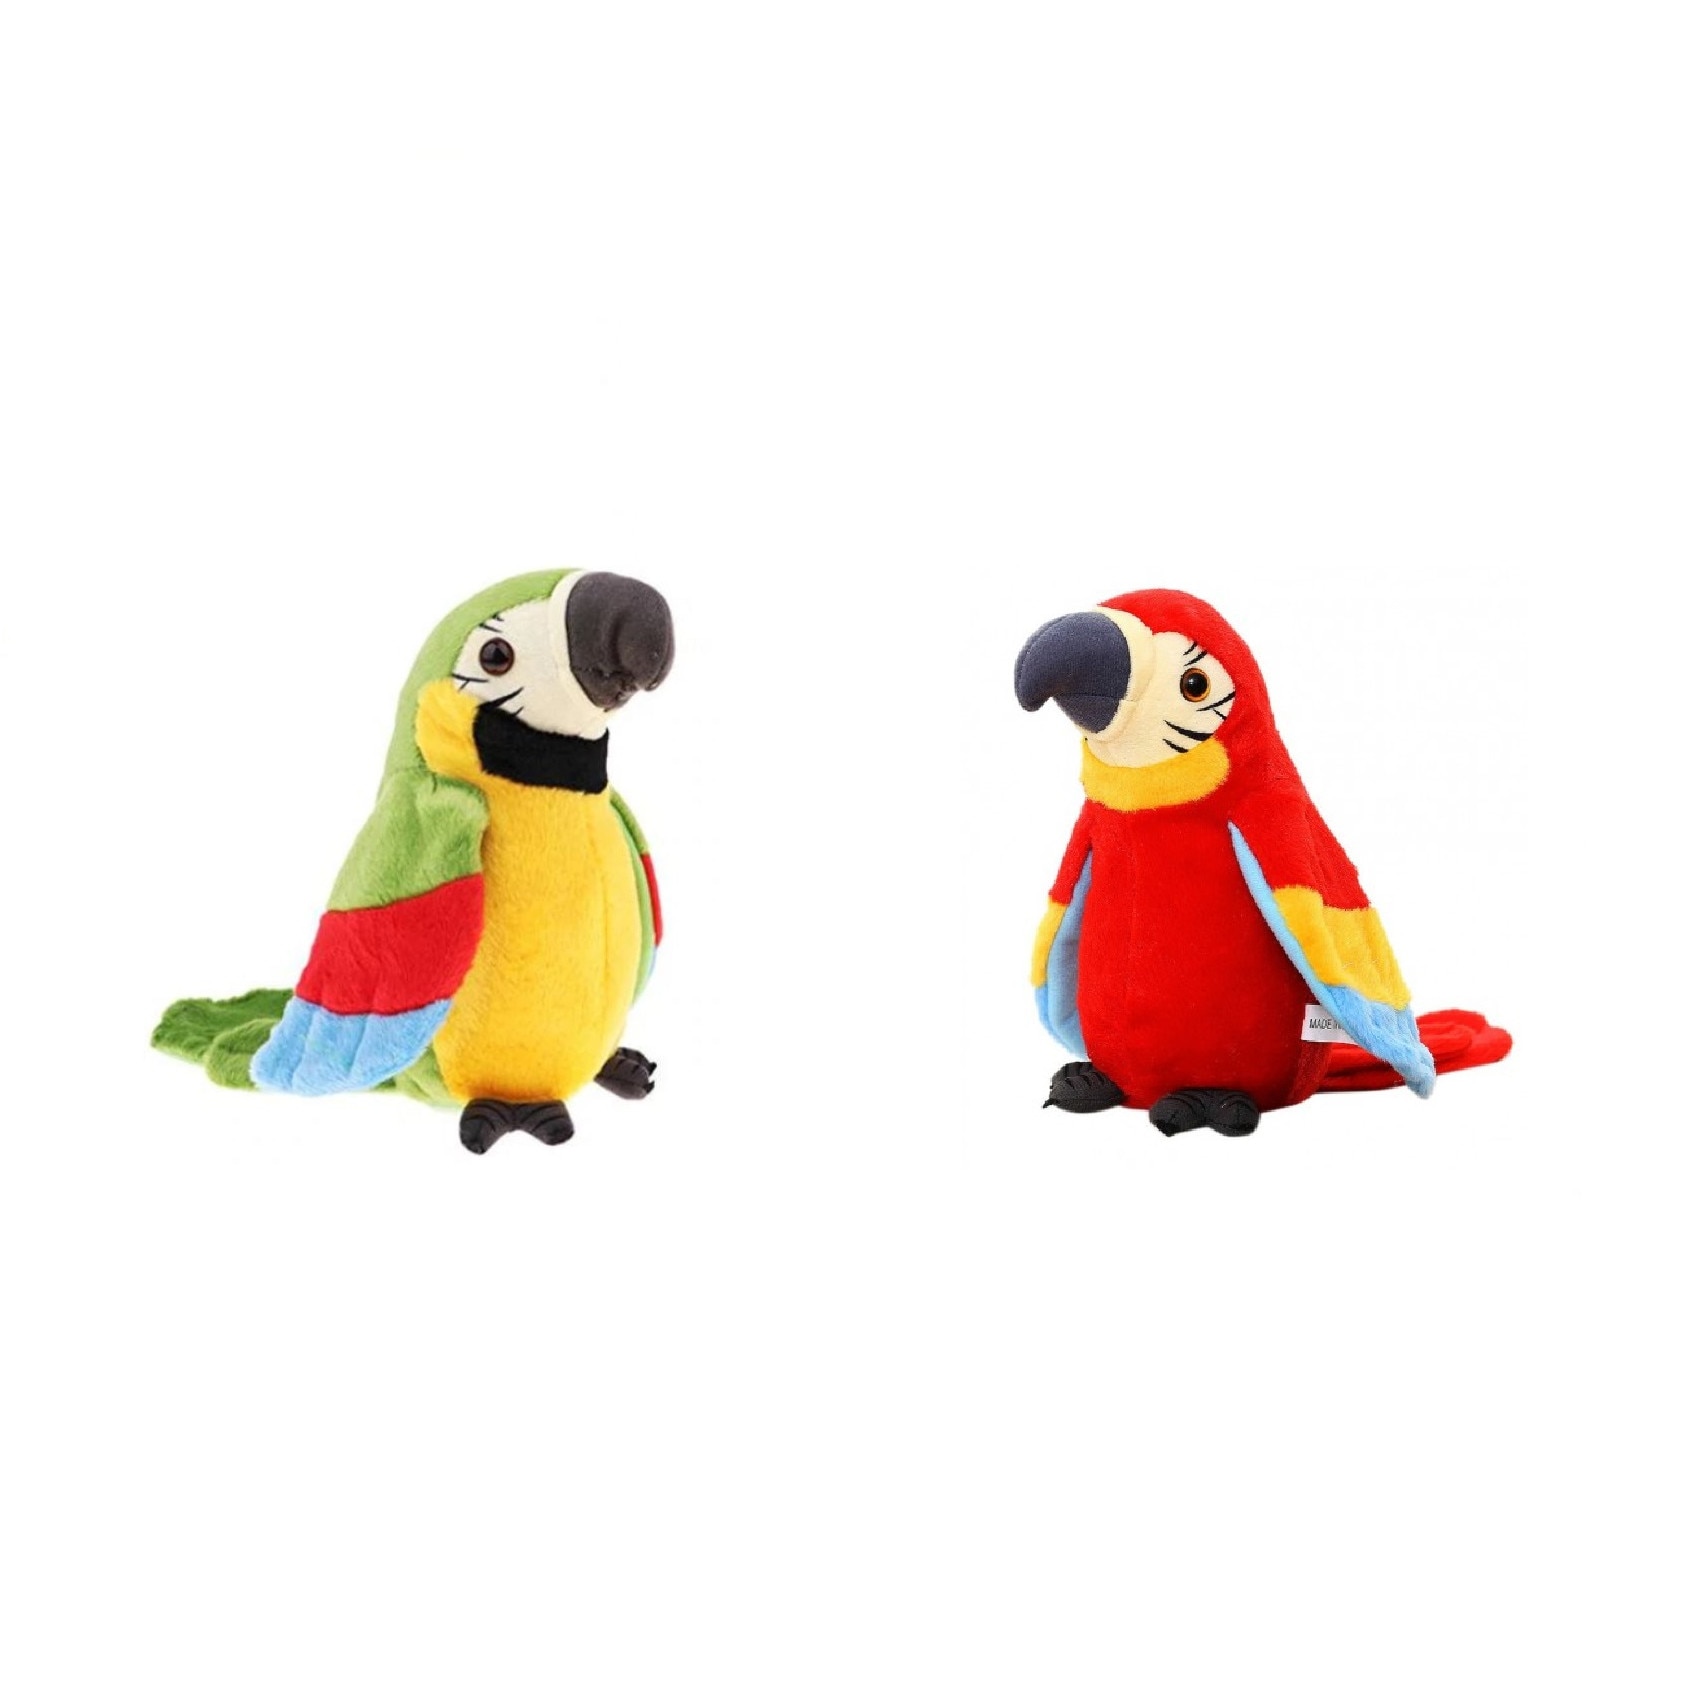 Set 2 jucarii interactive pentru copii, papagalii vorbitori, imita sunetele pe care le aud pe o amuzanta, stimuleaza abilitati sociale si vocabularul, 18 cm, verde/rosu -